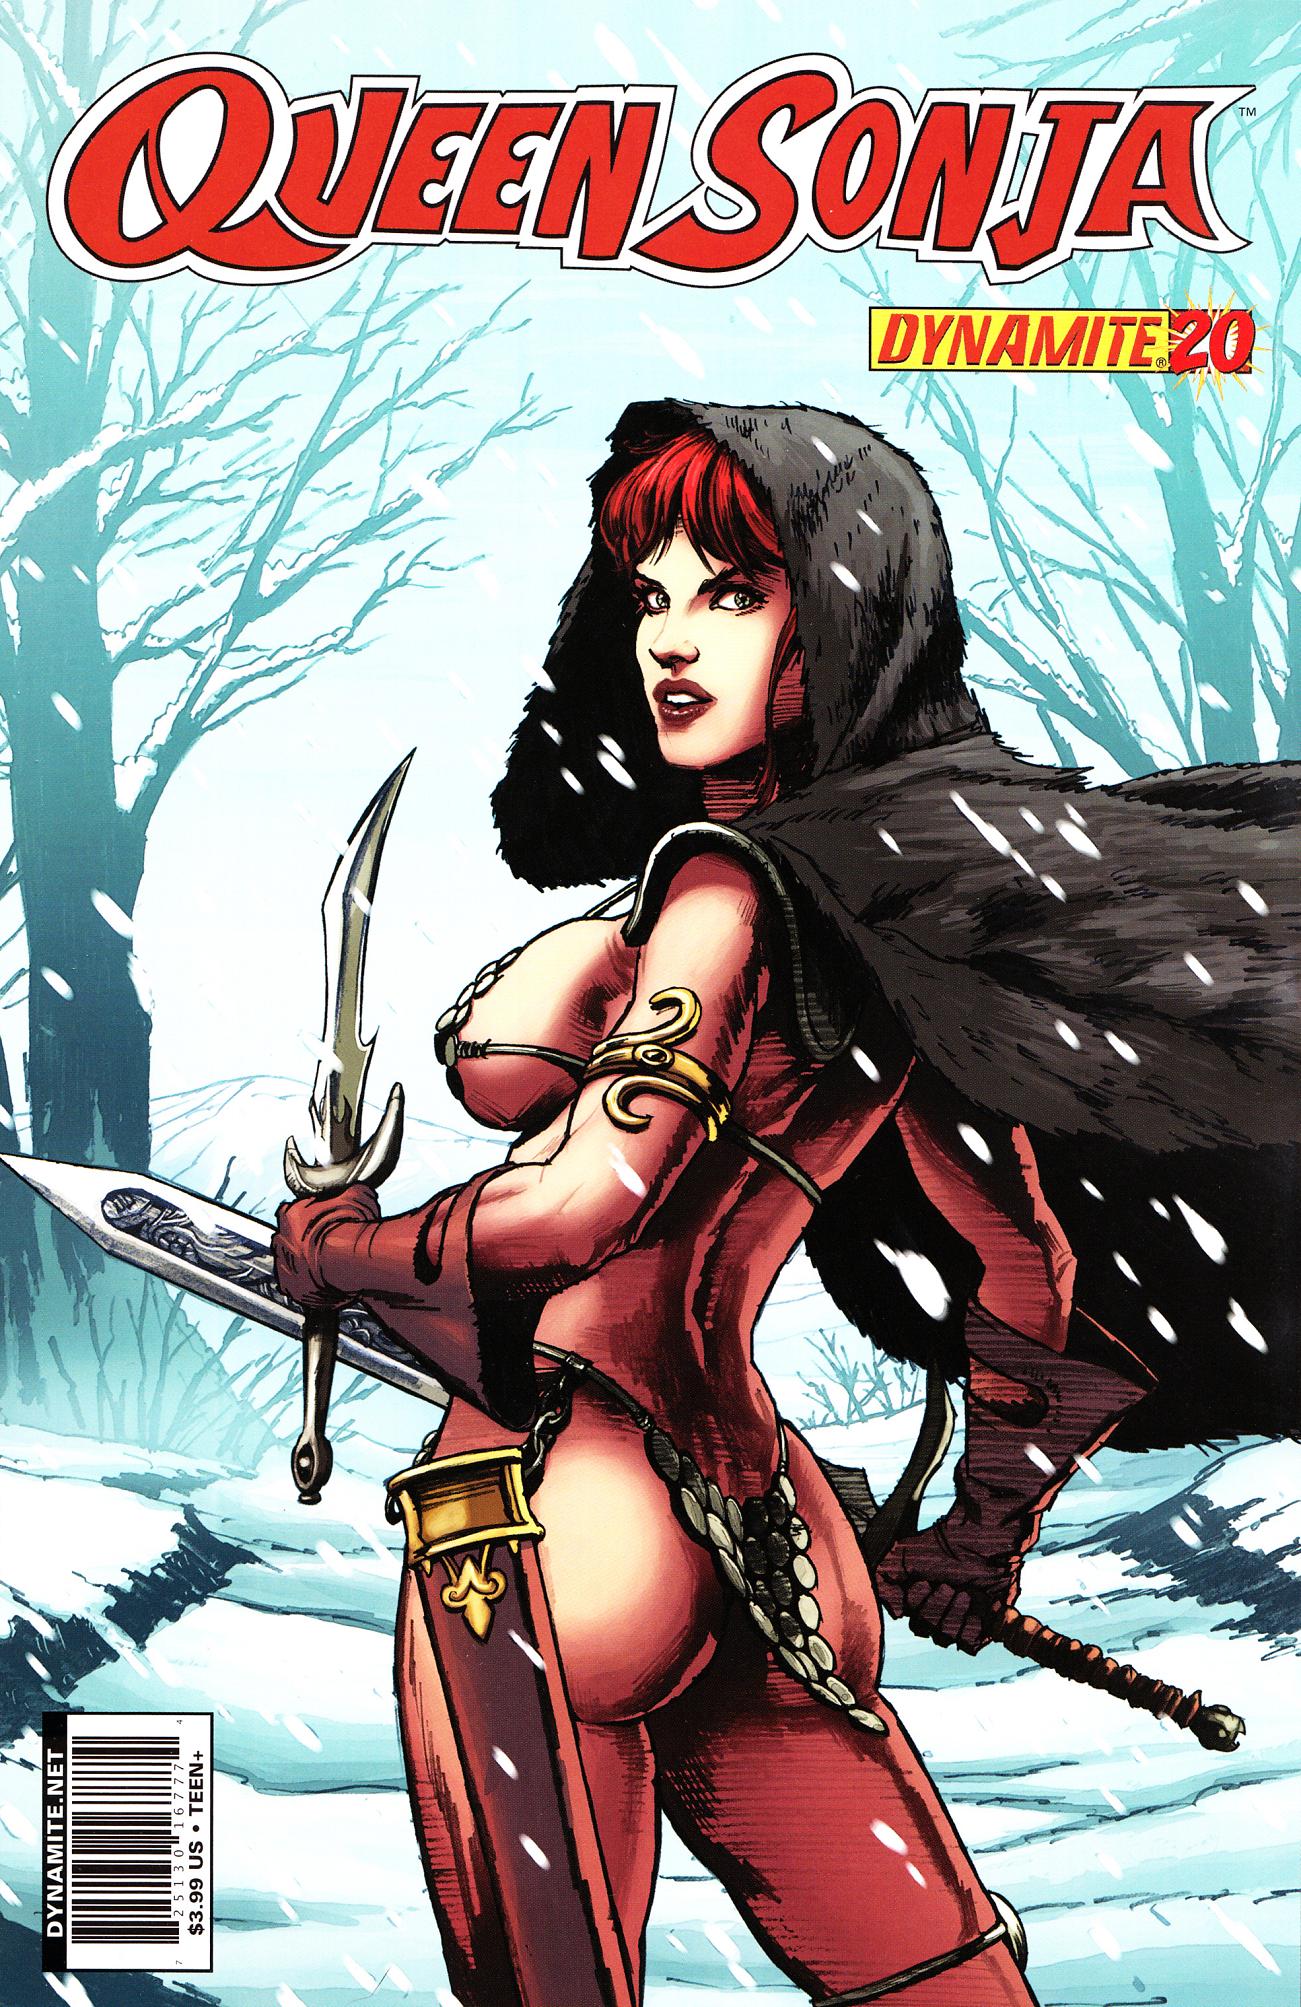 Read online Queen Sonja comic -  Issue #20 - 1